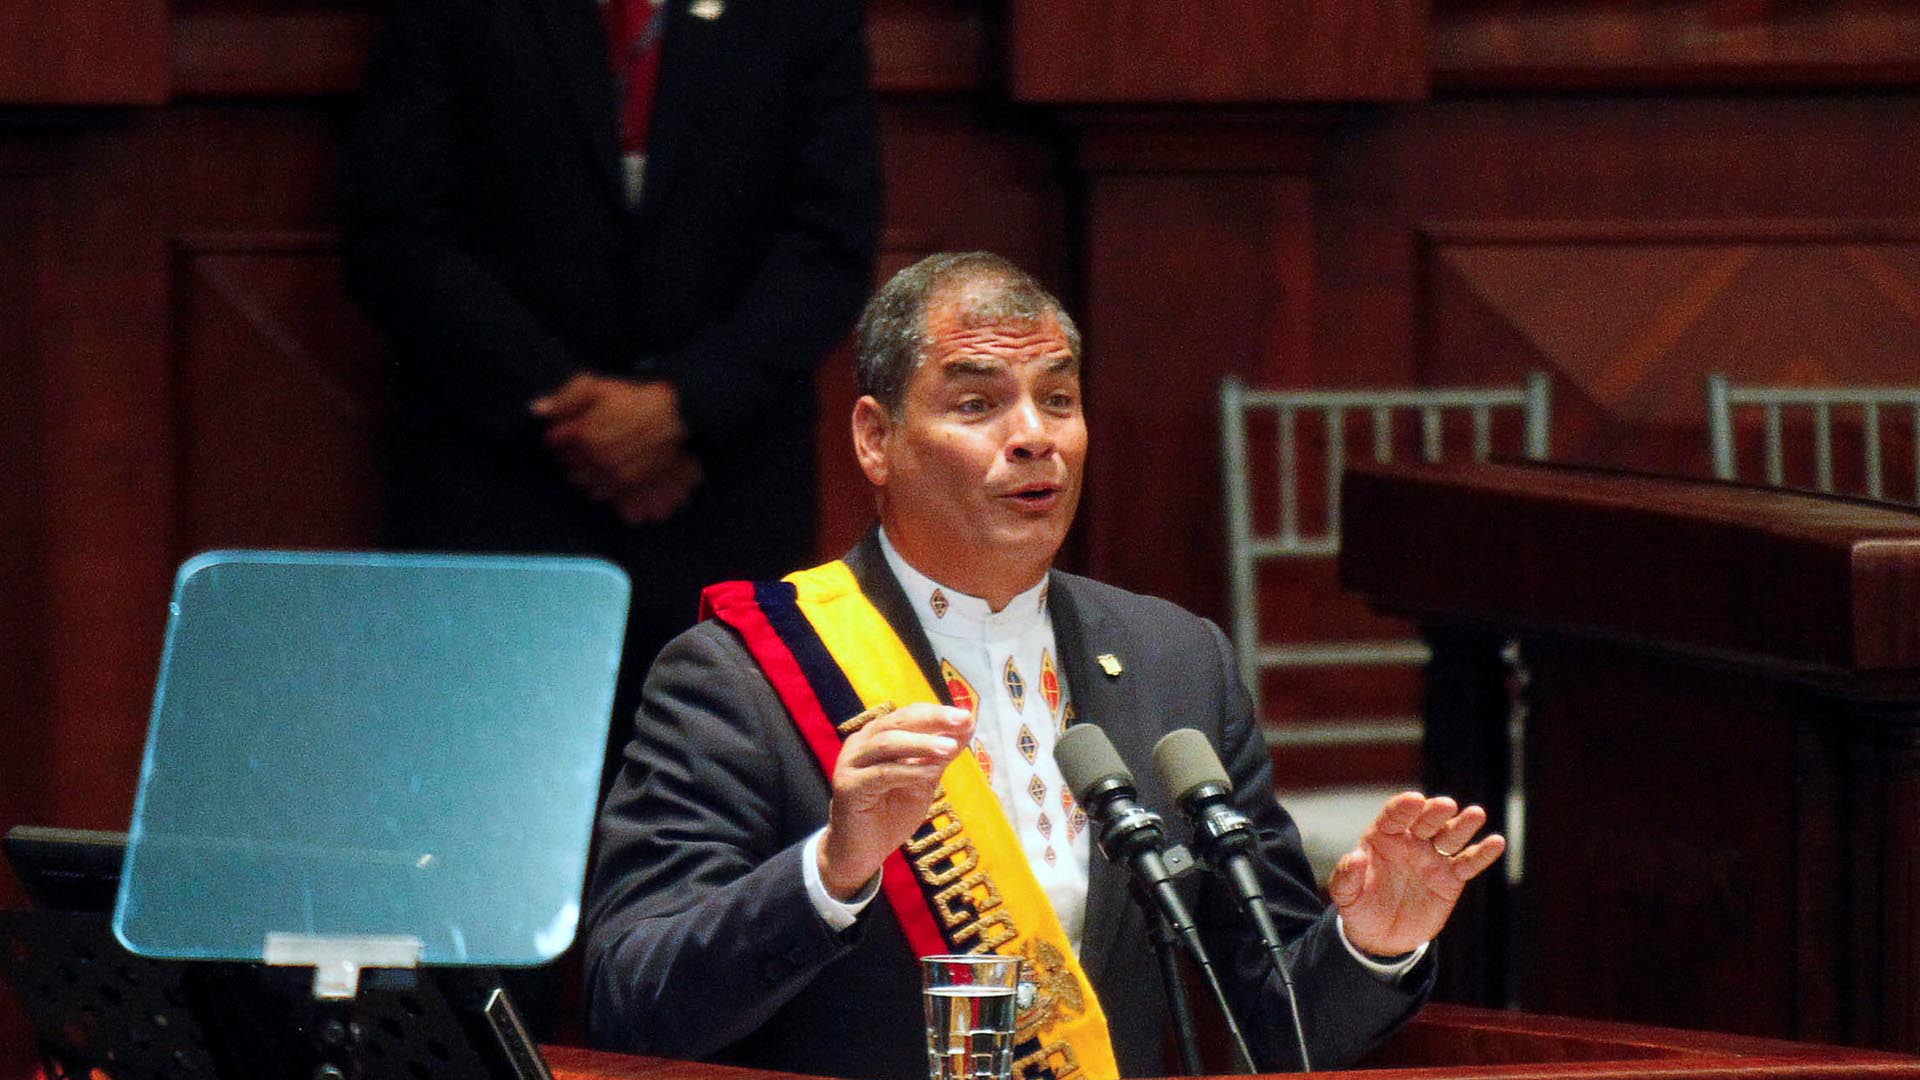 En Ecuador se realizarán elecciones presidenciales en el 2017, en las que Correa anuncio que no participará